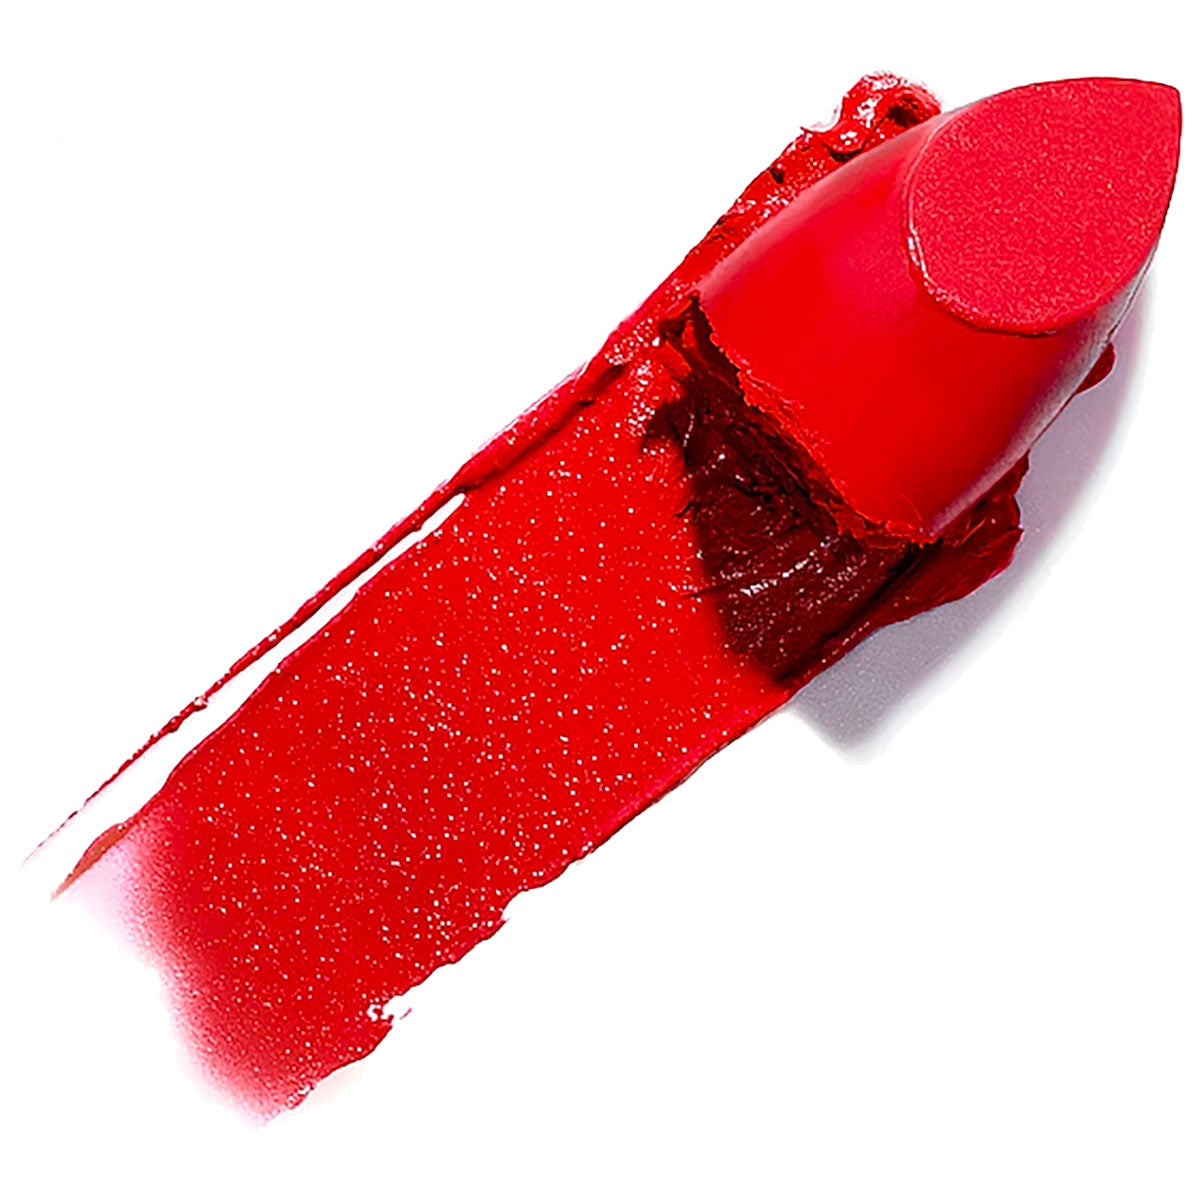 ILIA Color Block Lipstick | Flame